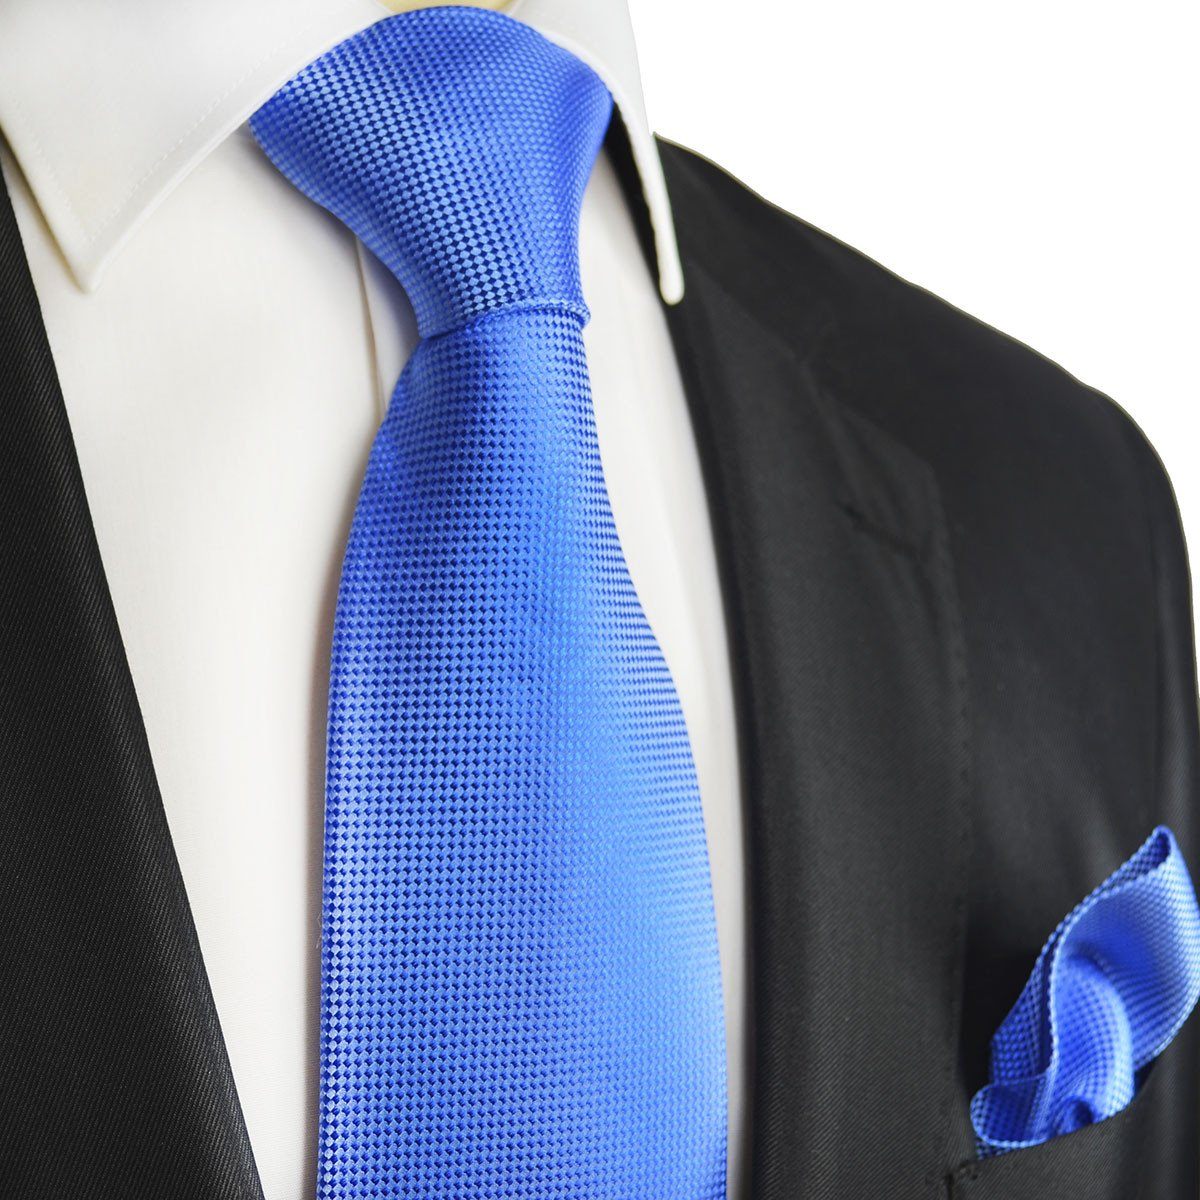 Синяя рубашка и галстук